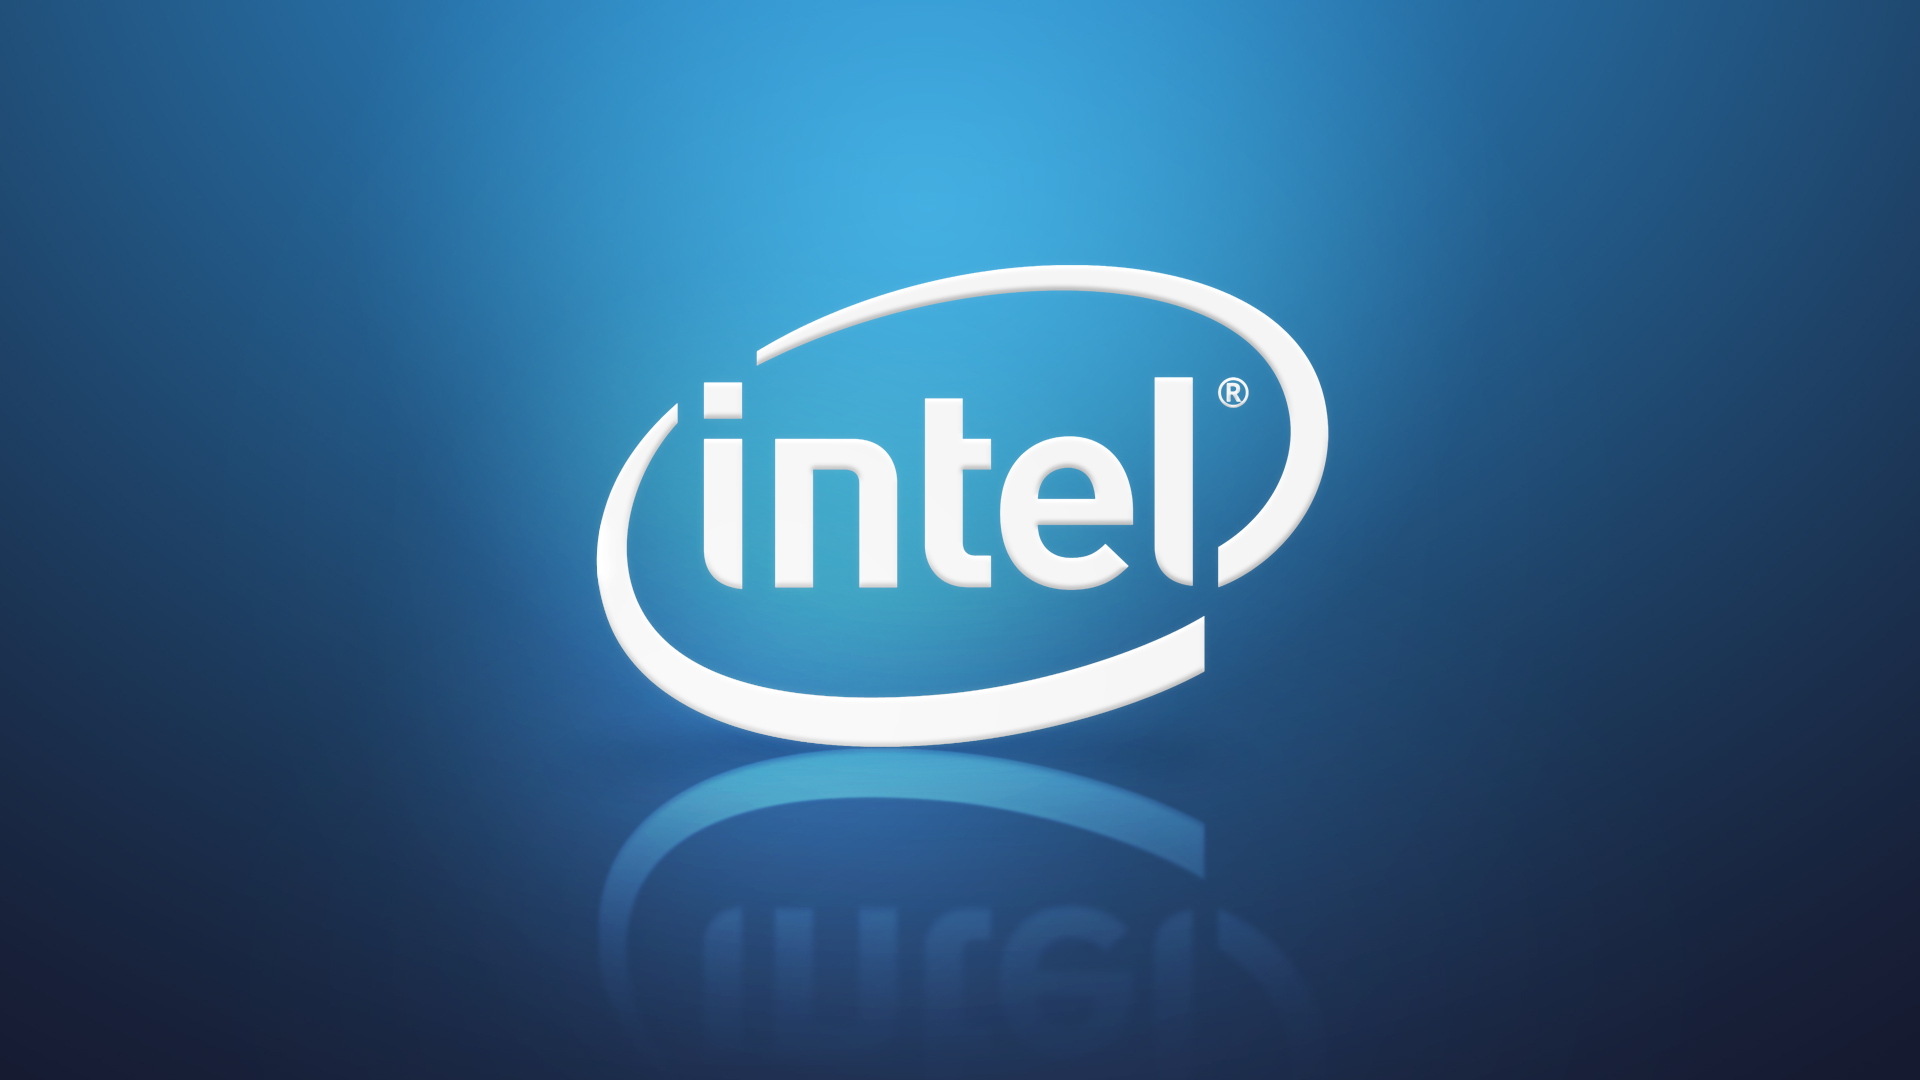 Интел без. Эмблема Intel Core. Компания Интел лого. Логотип Intel inside. Заставка Интел.